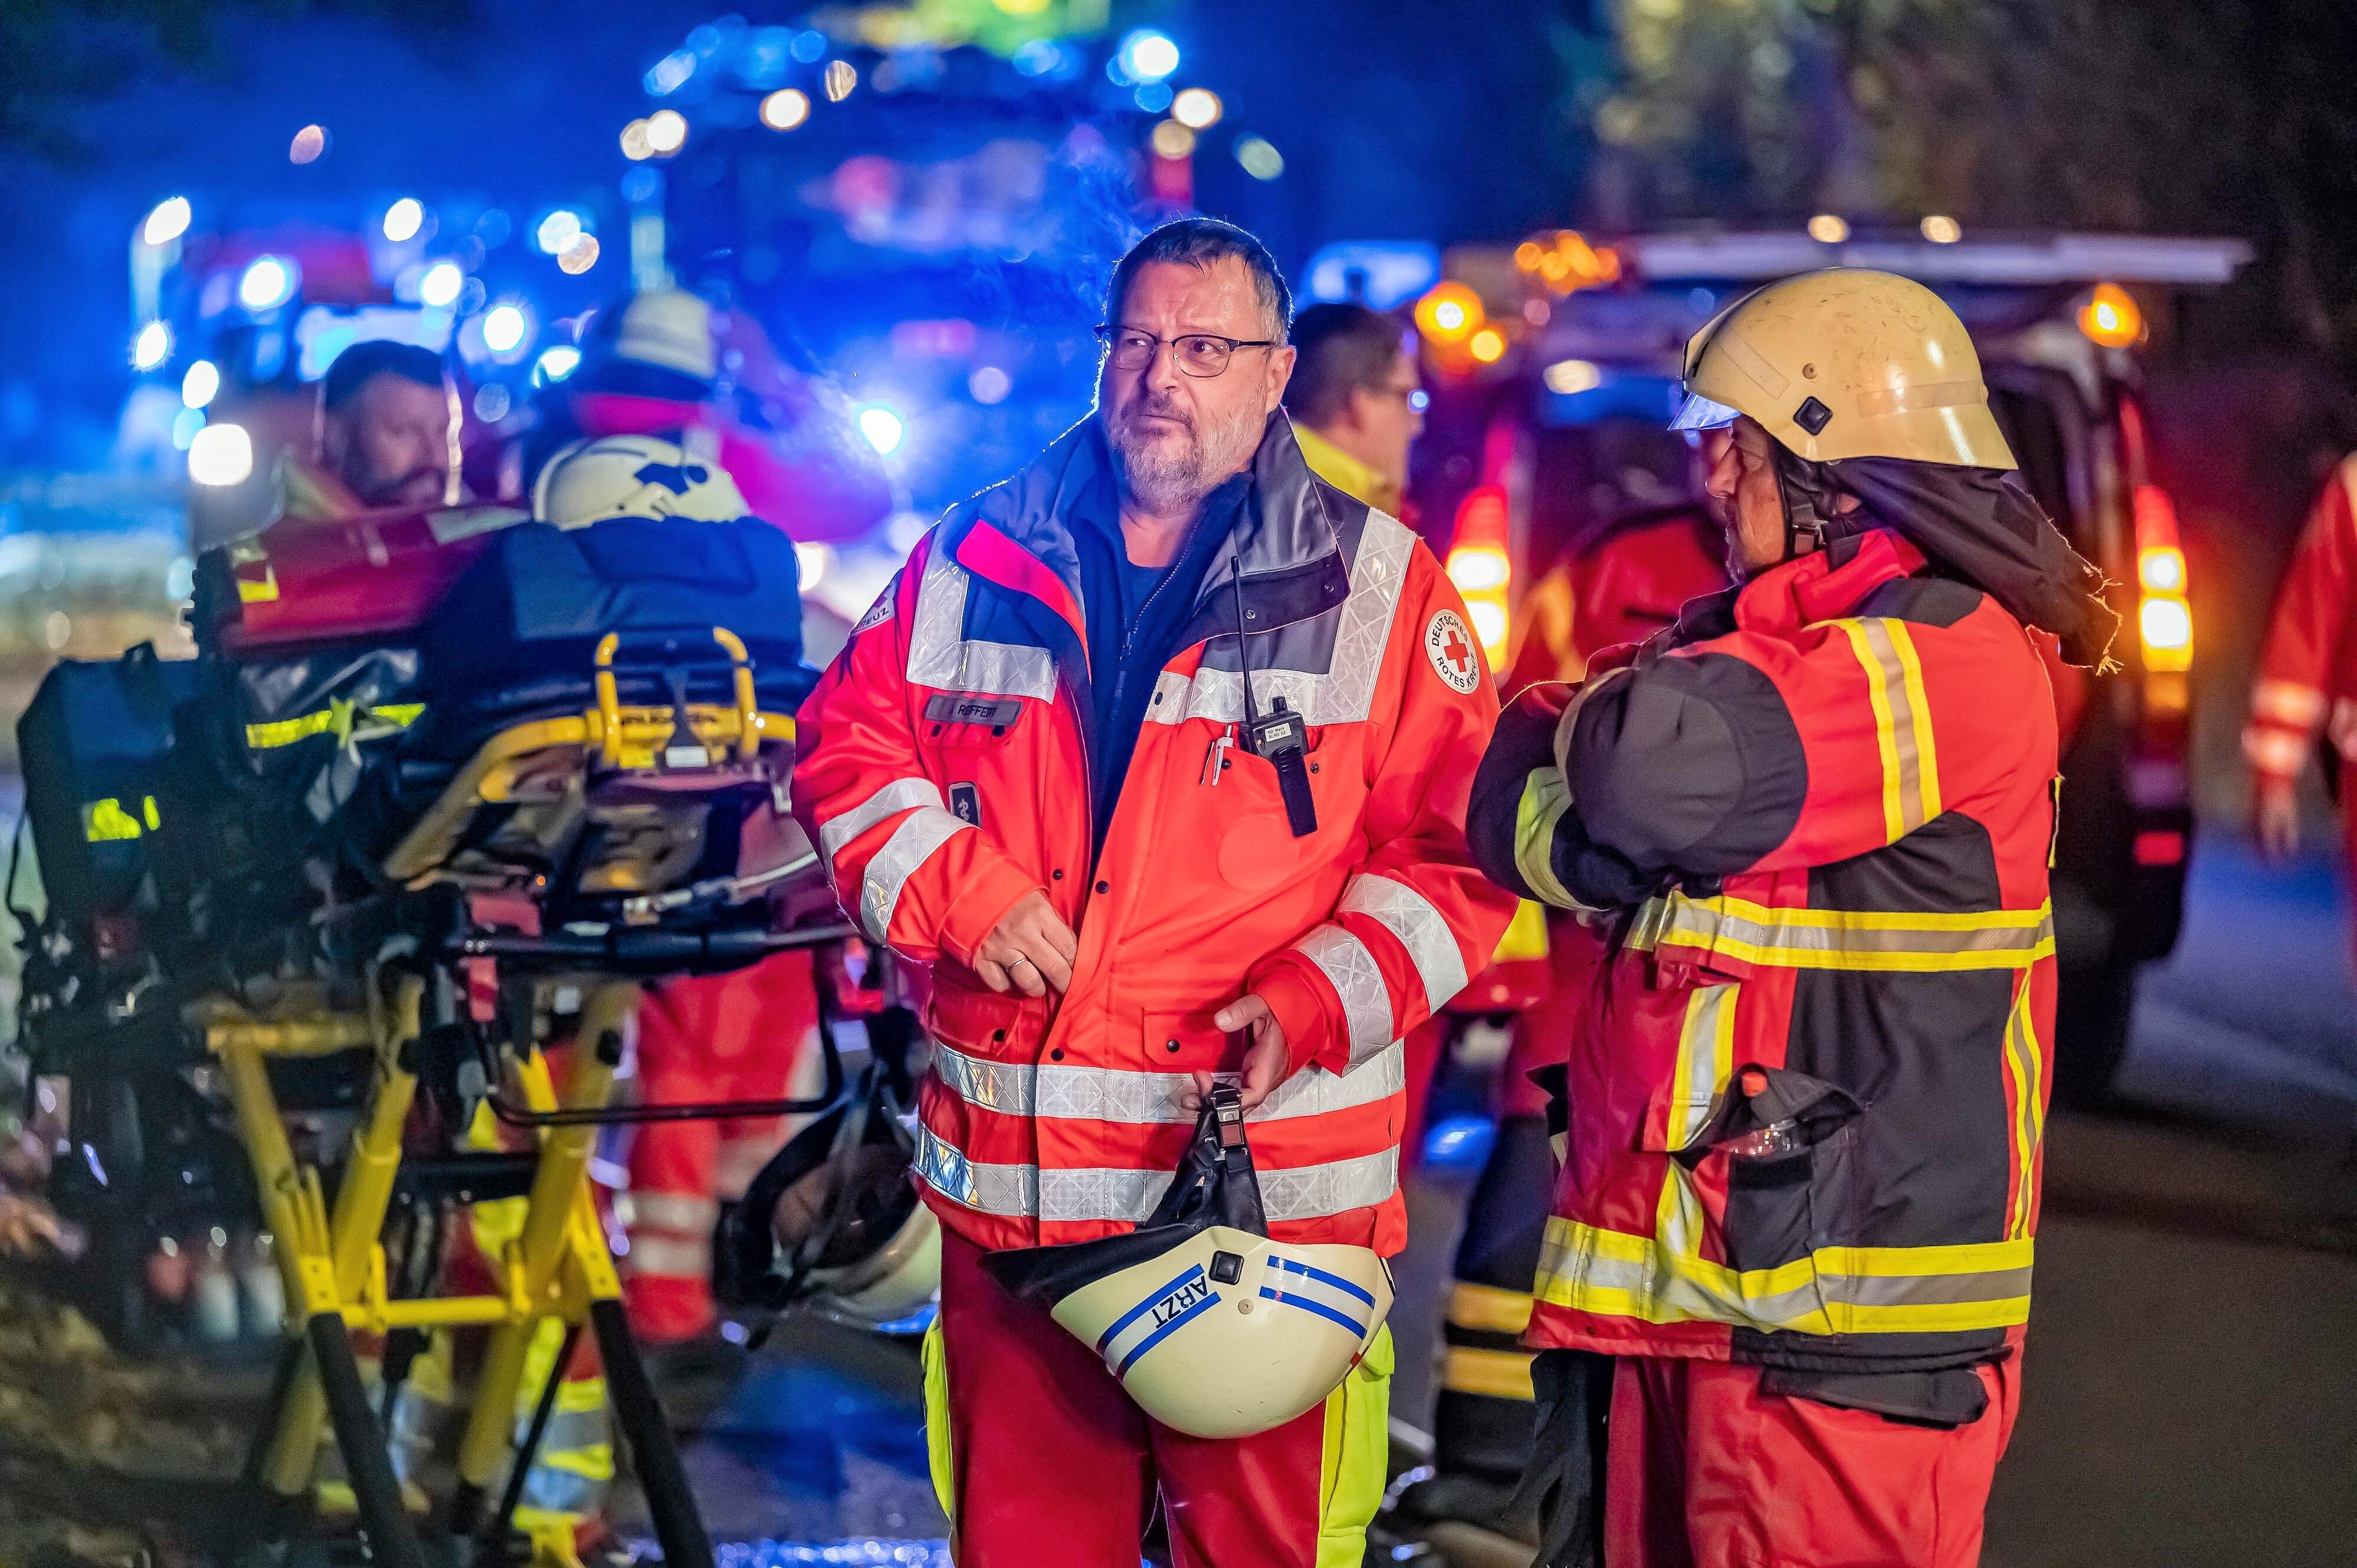 Feuerinferno in Baden-Württemberg - Feuerwehr entdeckt Leiche einer Frau!